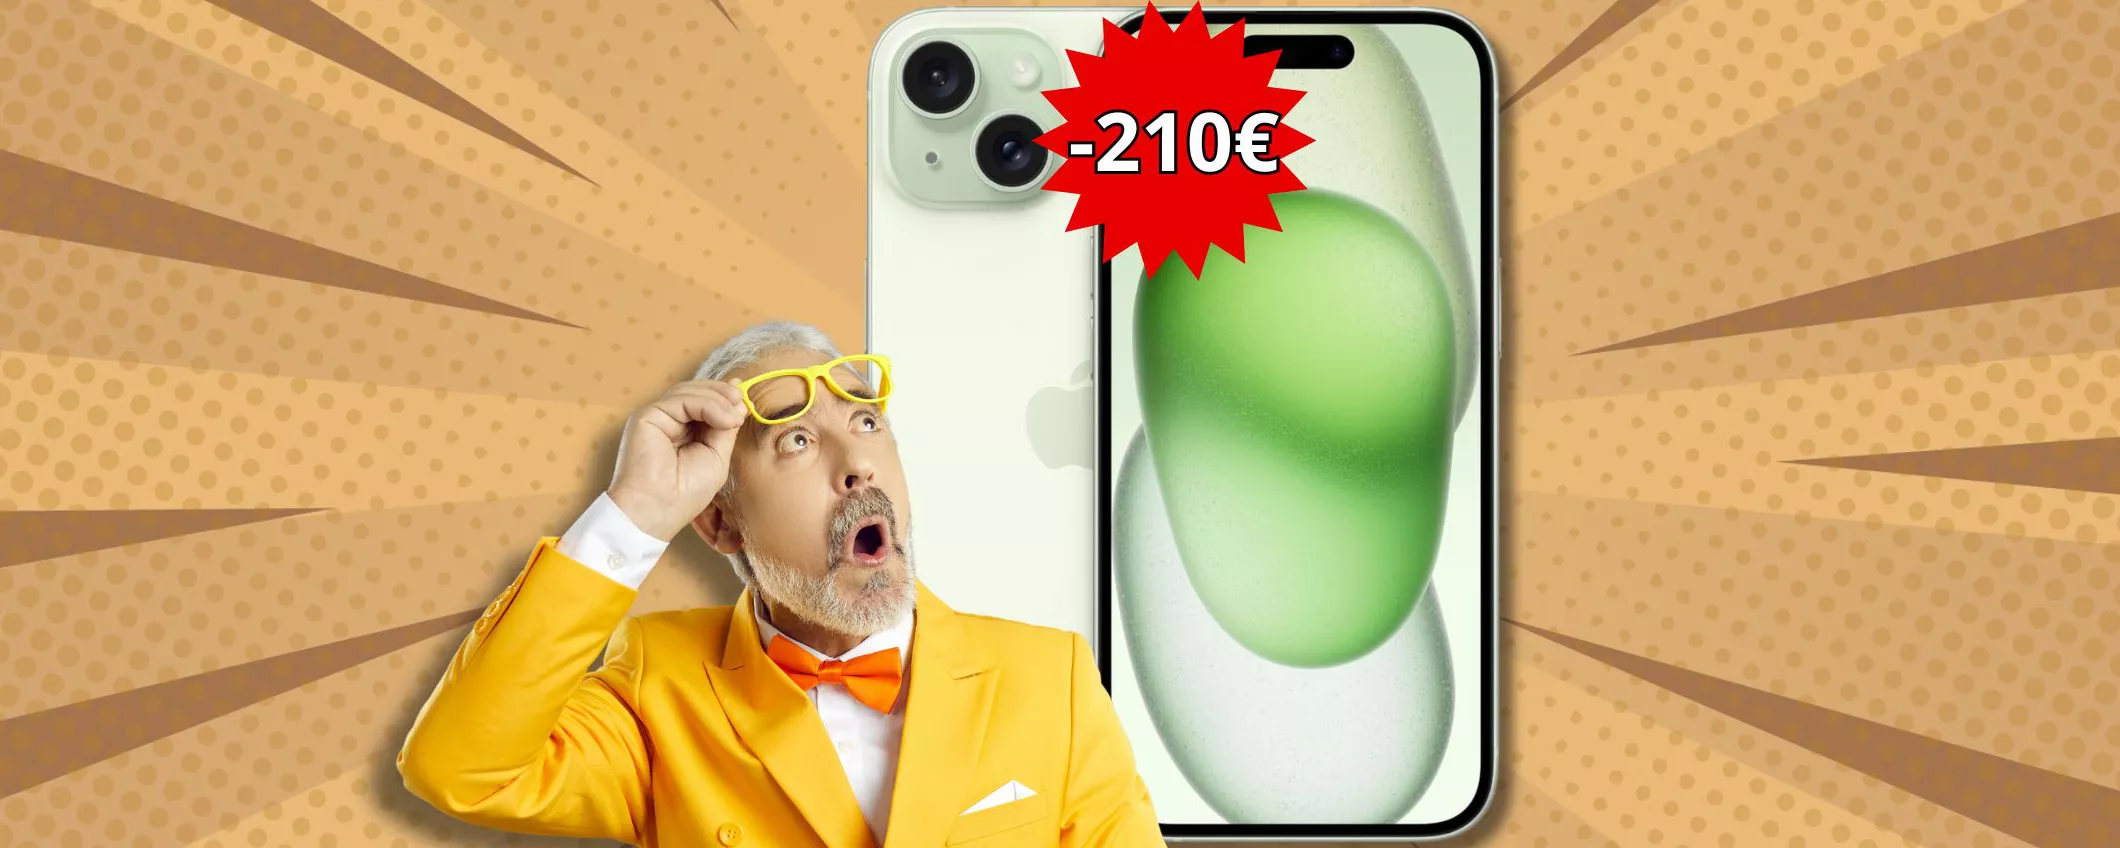 iPhone 15 CROLLA DI PREZZO: solo ora su Amazon RISPARMI 210€